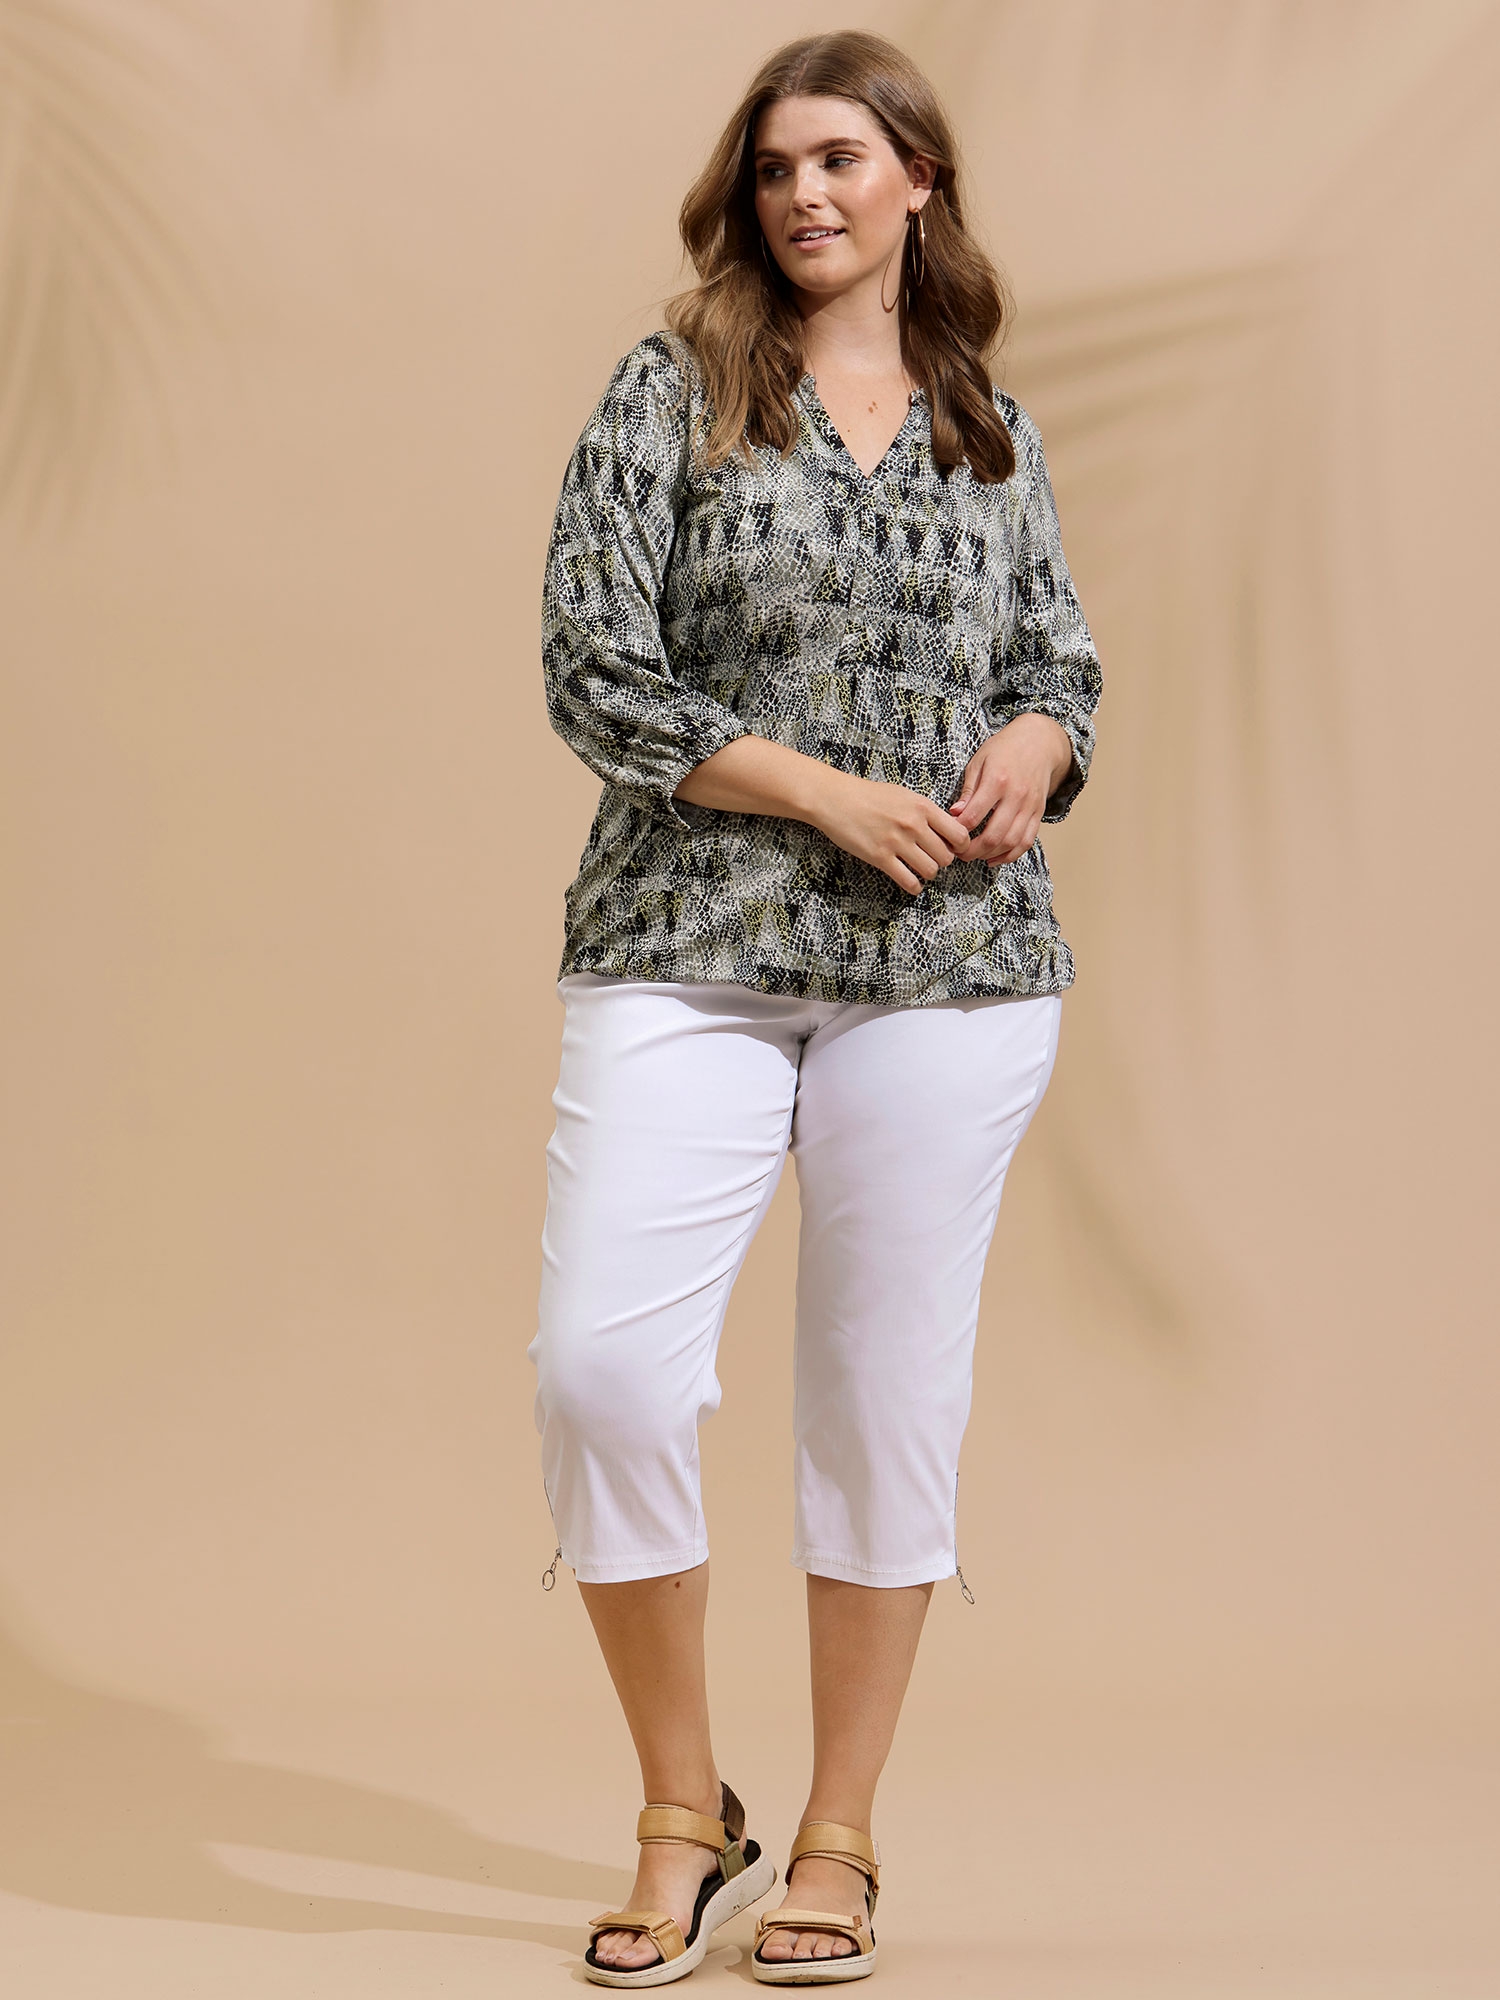 JAZZY - Hvide capri bukser med lynlås detalje fra Zhenzi